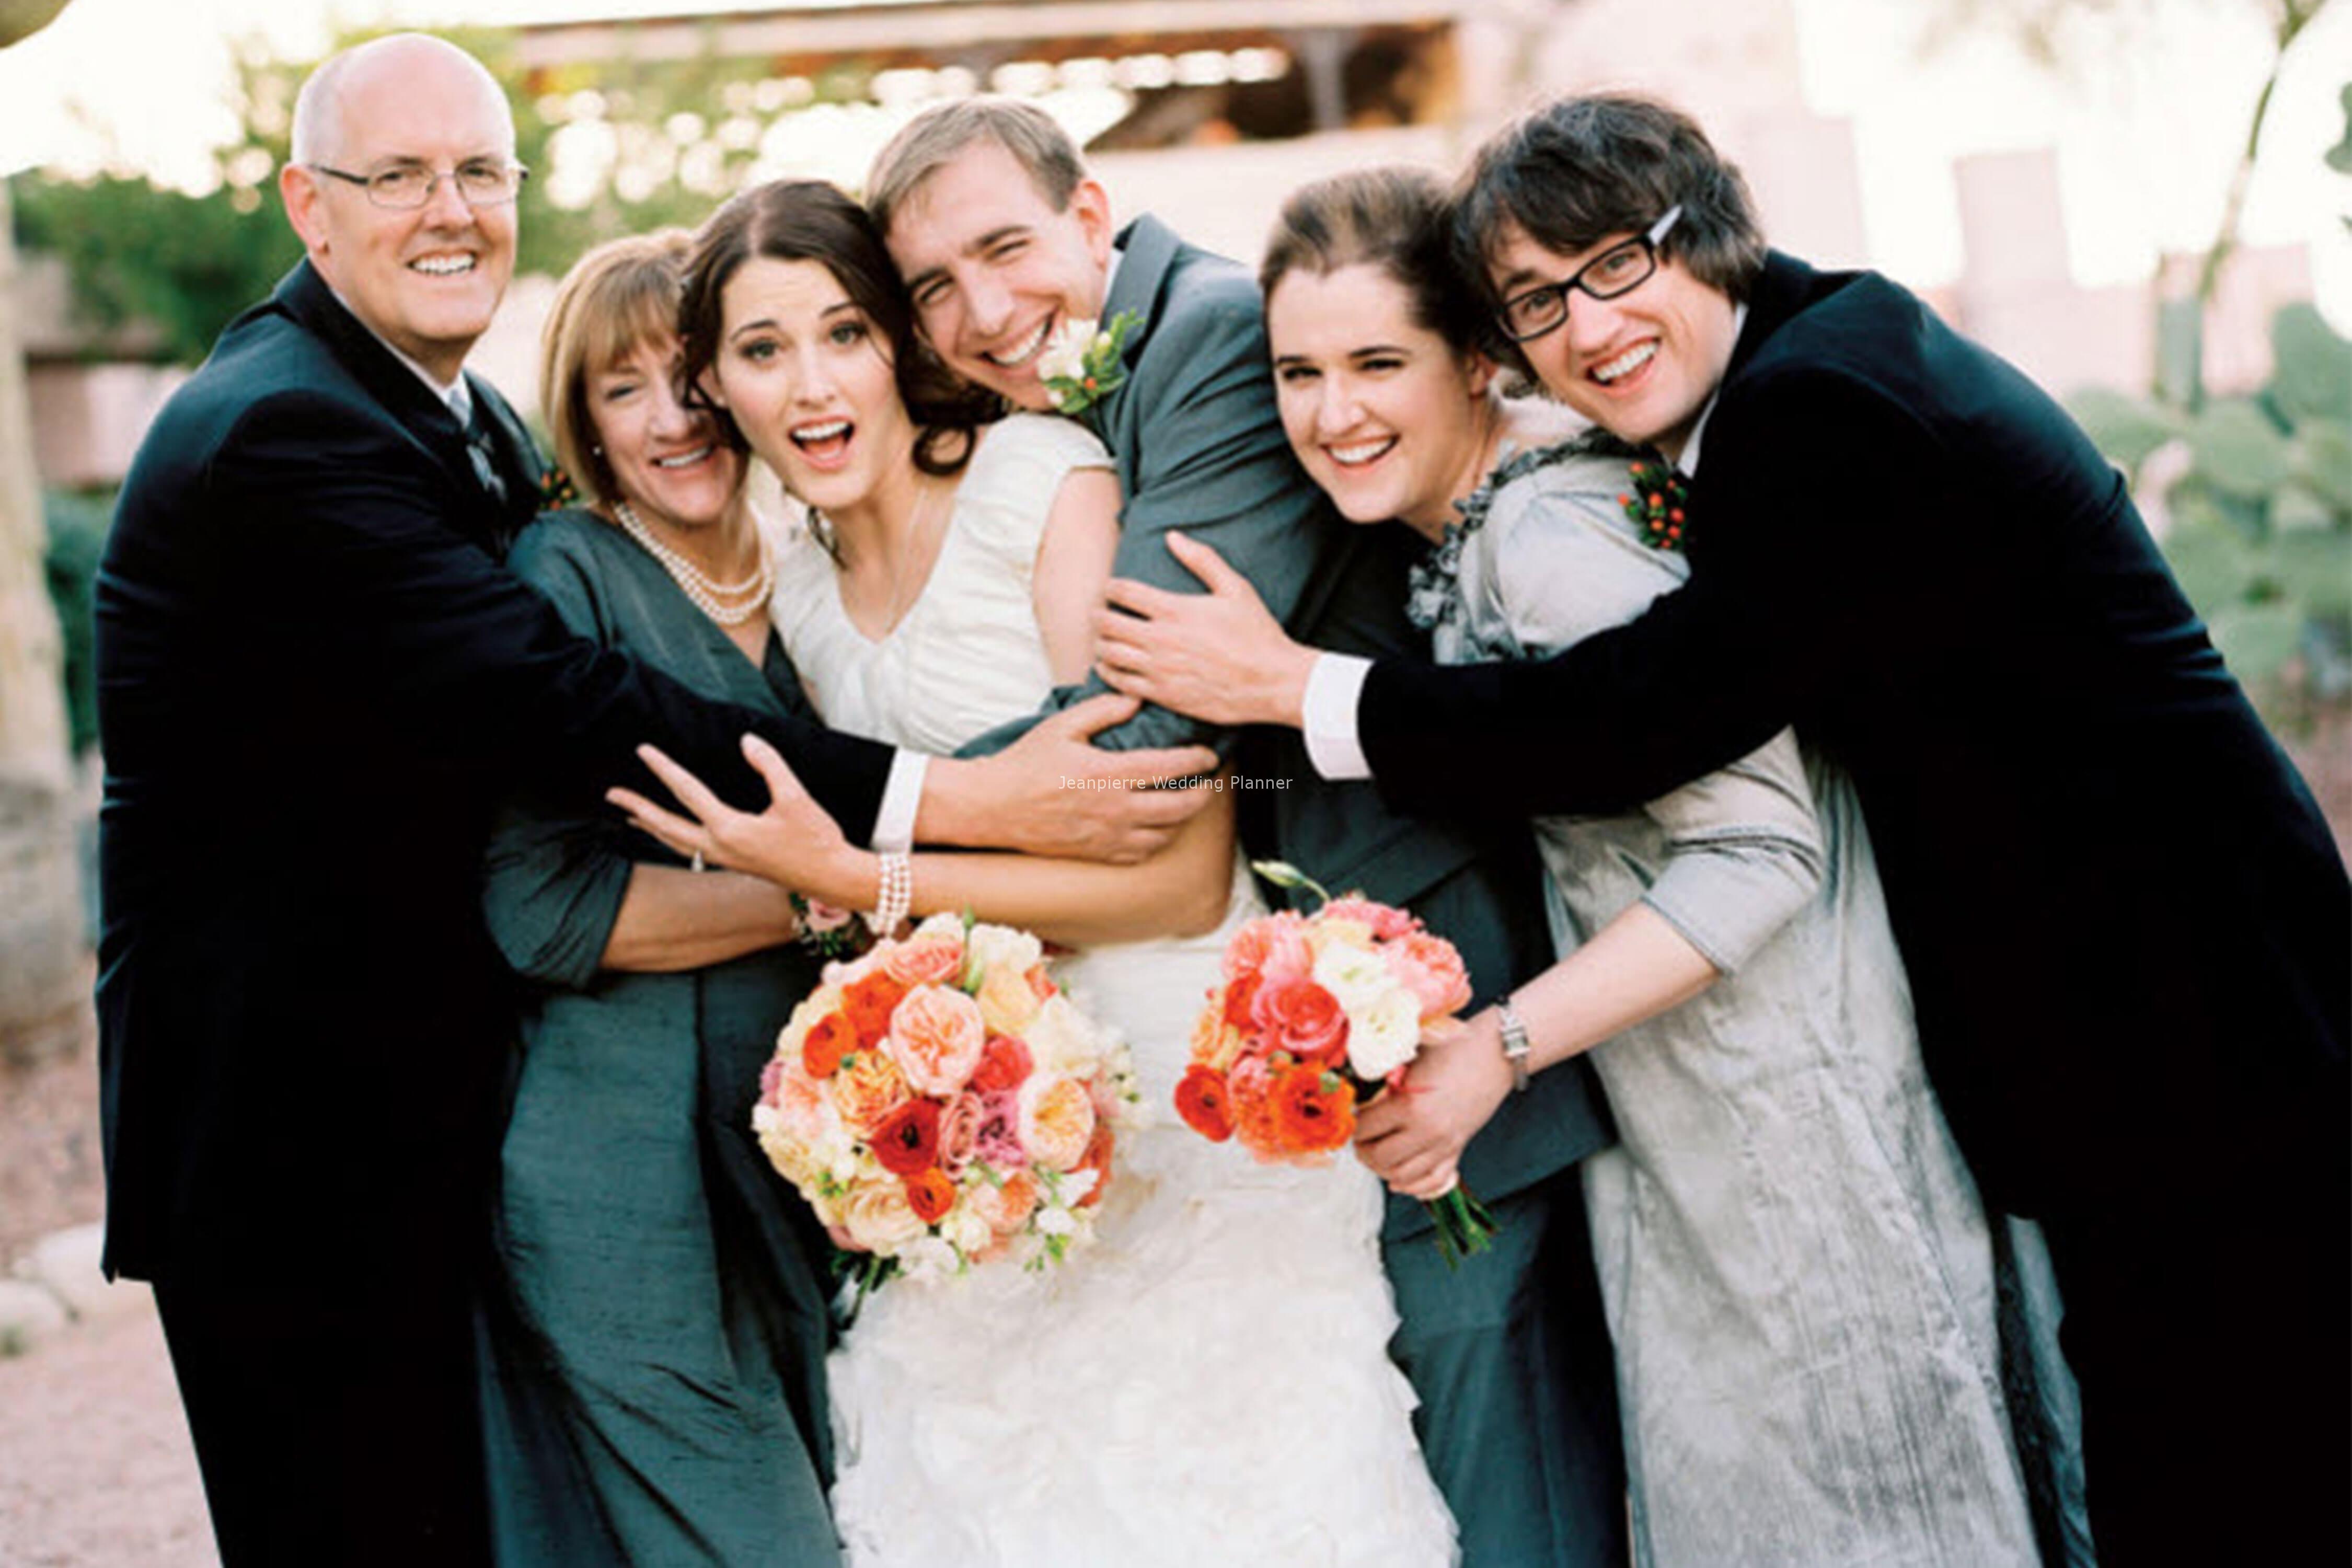 Family wedding. Свадьба и семья. Свадебная фотосессия с семьей. Семейные фото со свадьбы. Фото семьи на свадьбе.